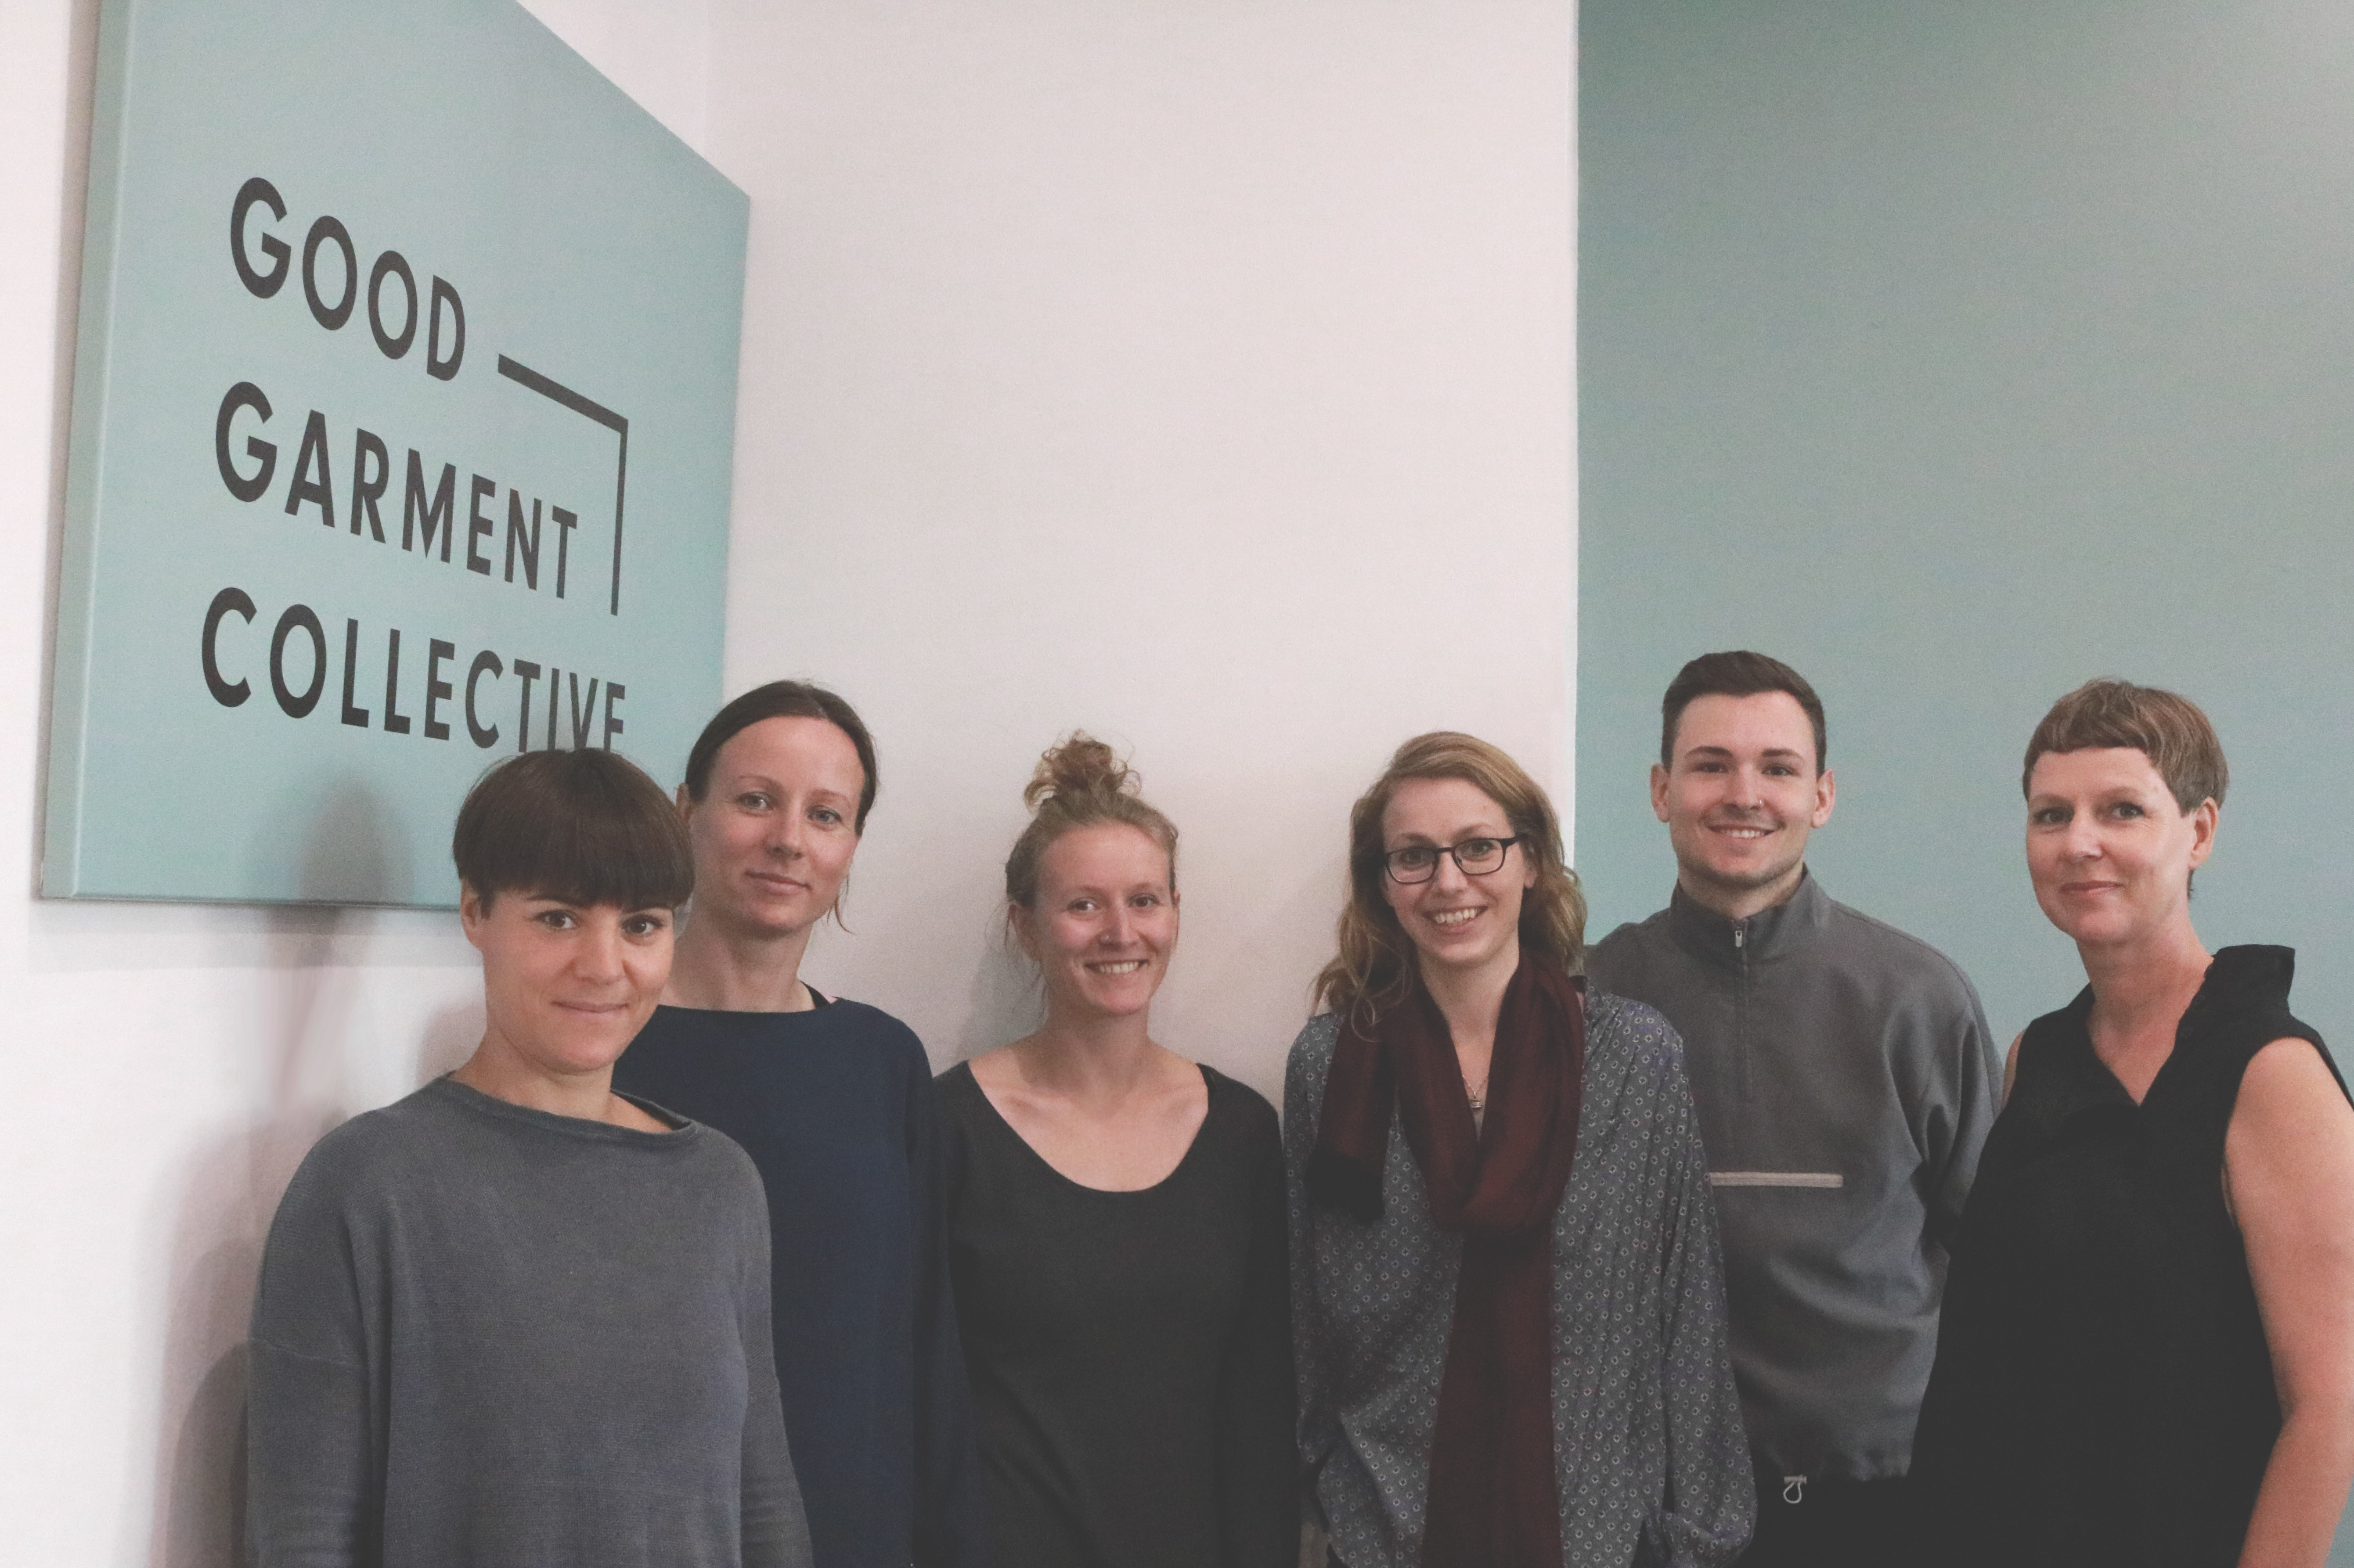 Team Good Garment Collective - kollektion nachhaltig produzieren